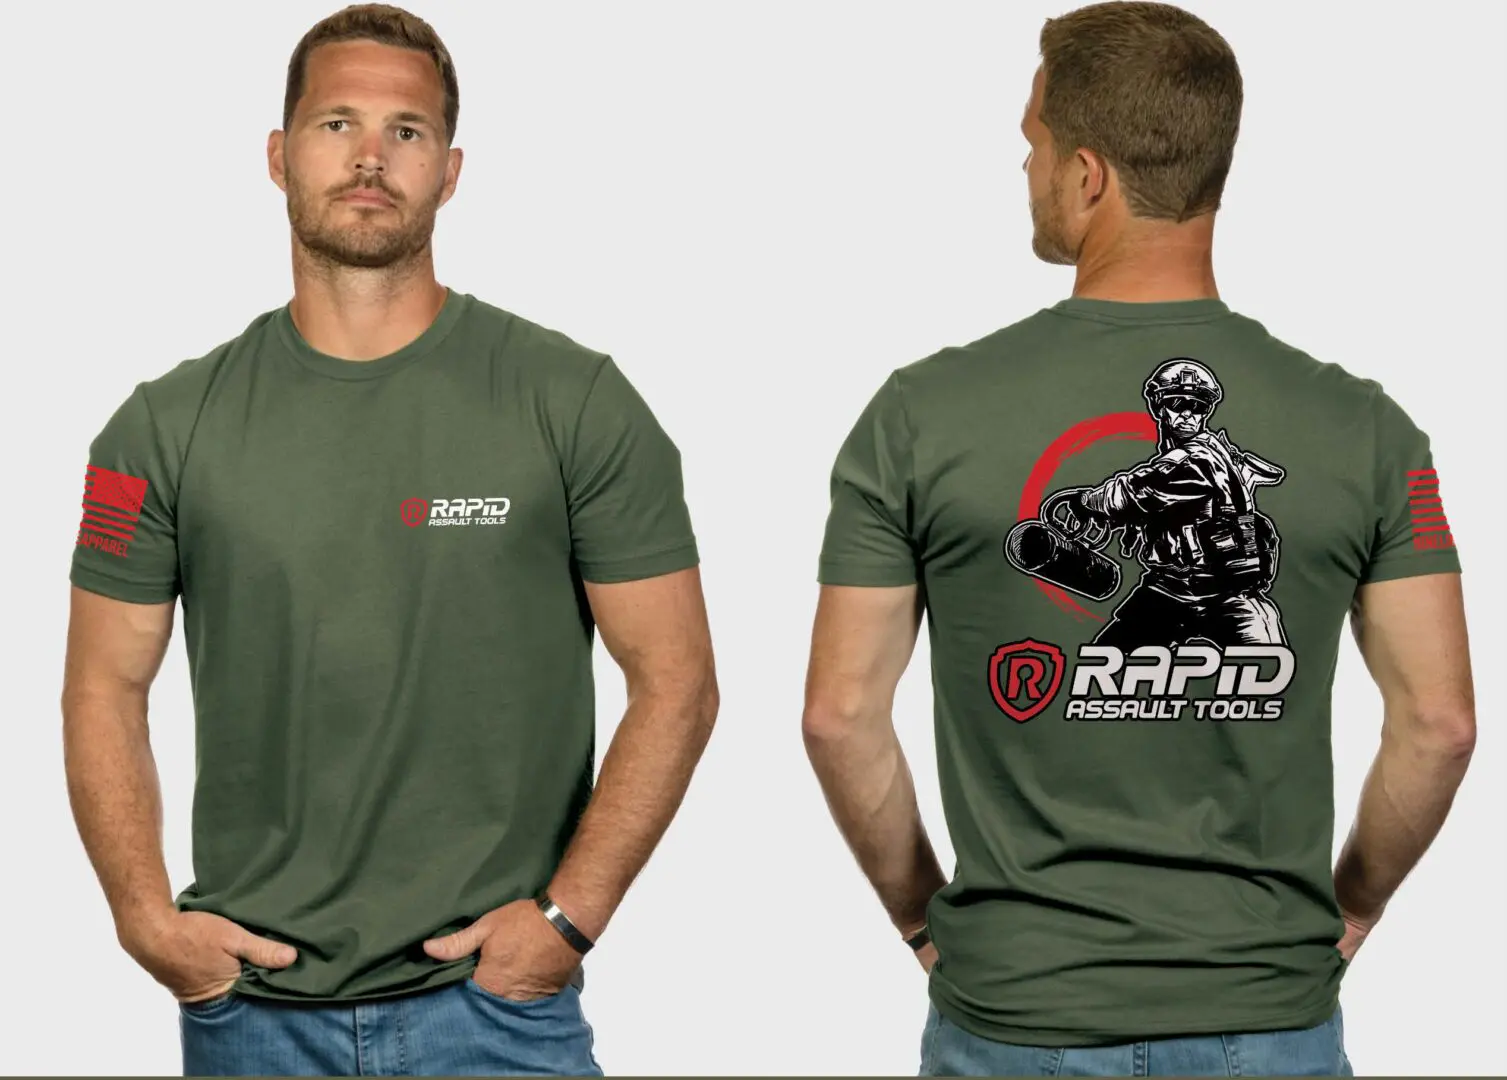 Breacher T-Shirt - Rapid Assault Tools